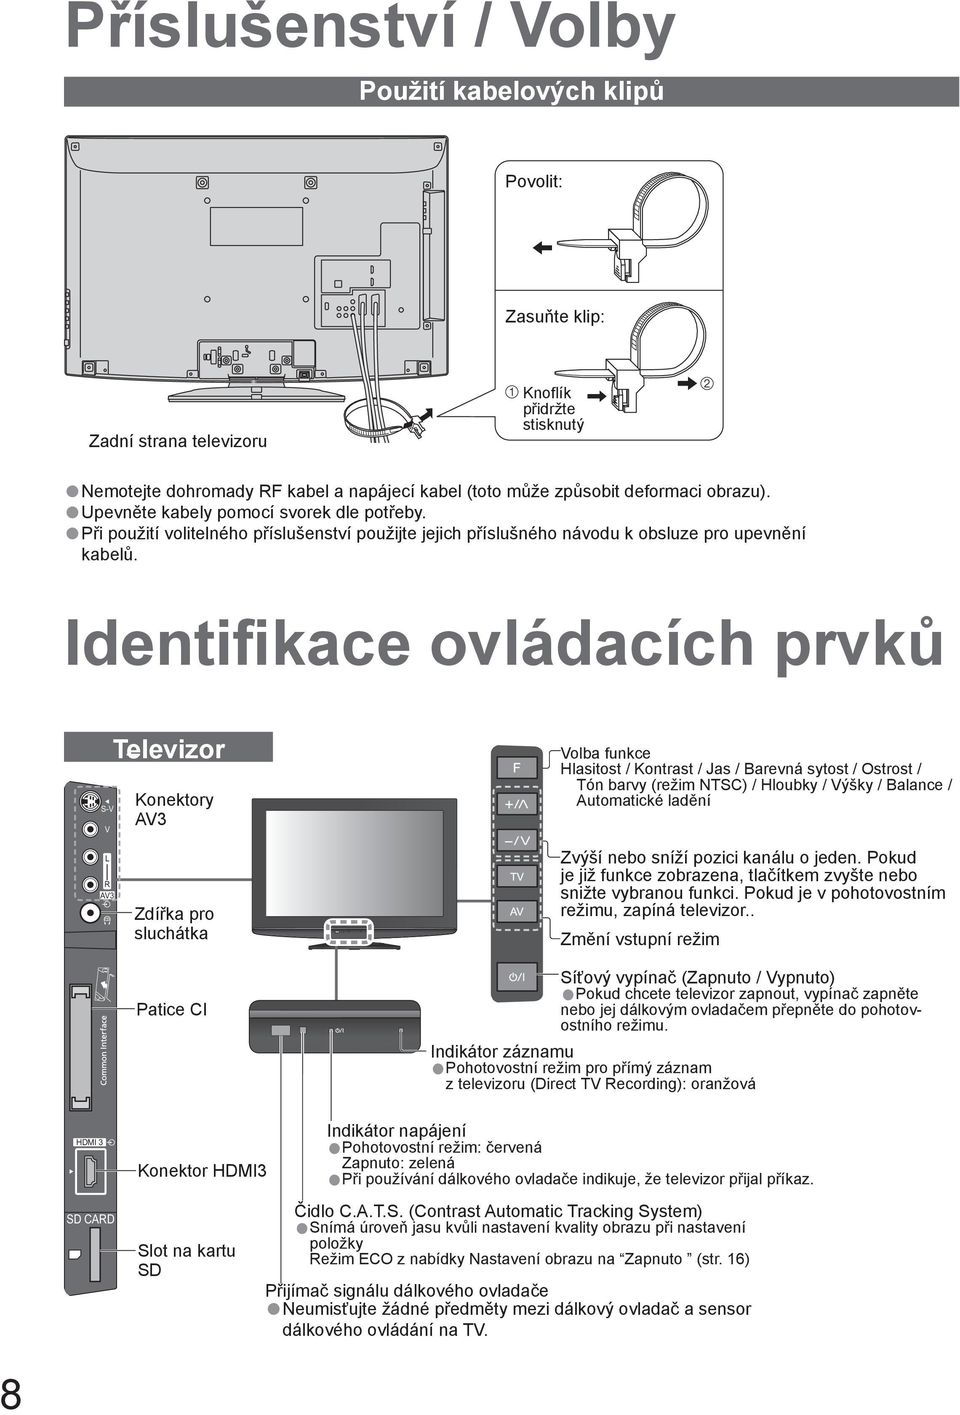 Identifikace ovládacích prvků S-V V Televizor Konektory AV3 Volba funkce Hlasitost / Kontrast / Jas / Barevná sytost / Ostrost / Tón barvy (režim NTSC) / Hloubky / Výšky / Balance / Automatické